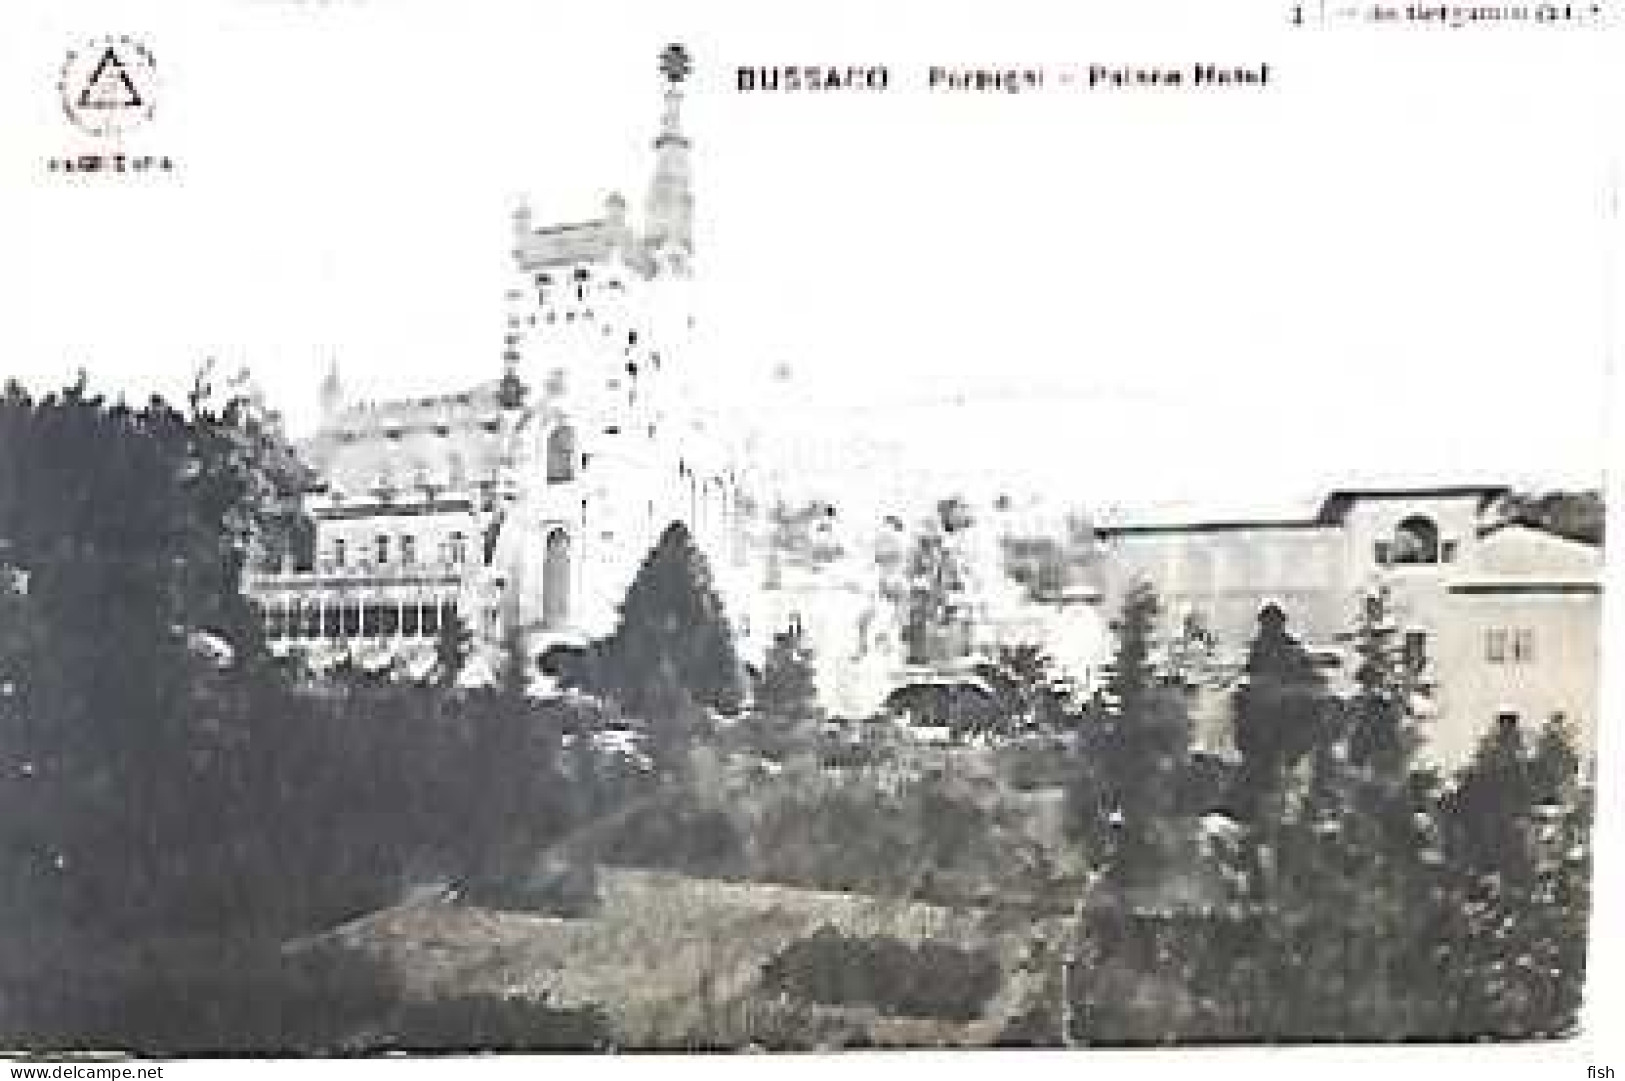 Portugal  & Postal, Bussaco, Palace Hotel, Ed. Bergamin &  Co., Registada Adelino A. Pereira, Figueira Da Foz (68668 - Coimbra